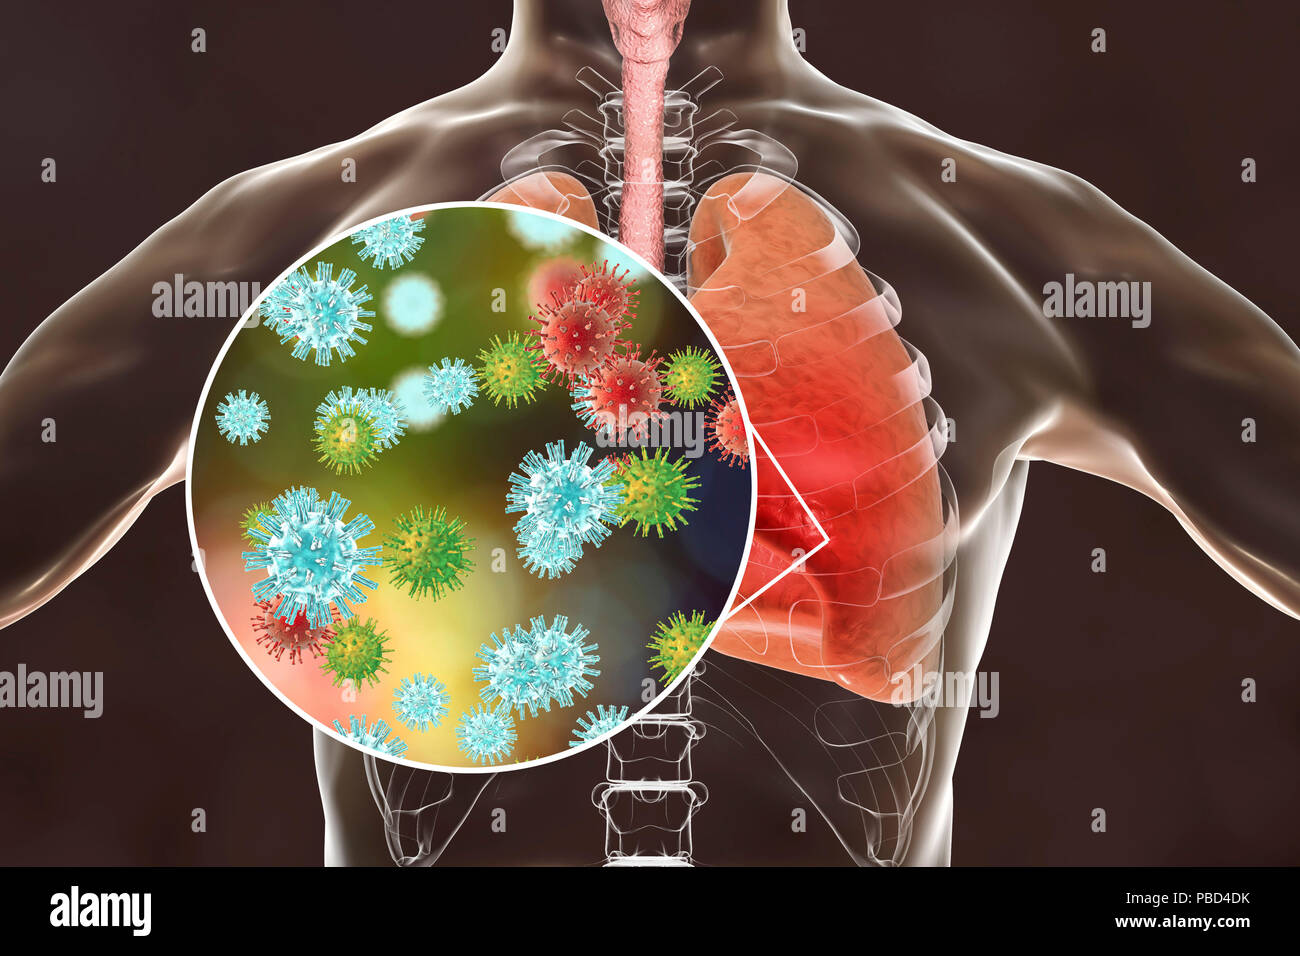 La pneumonie virale, illustration conceptuelle. Les poumons et la vue rapprochée des virus, les agents pathogènes de la pneumonie. La pneumonie peut être causée par plusieurs types de virus, y compris l'Influenza, MERS, SRAS, adénovirus et autres. Banque D'Images